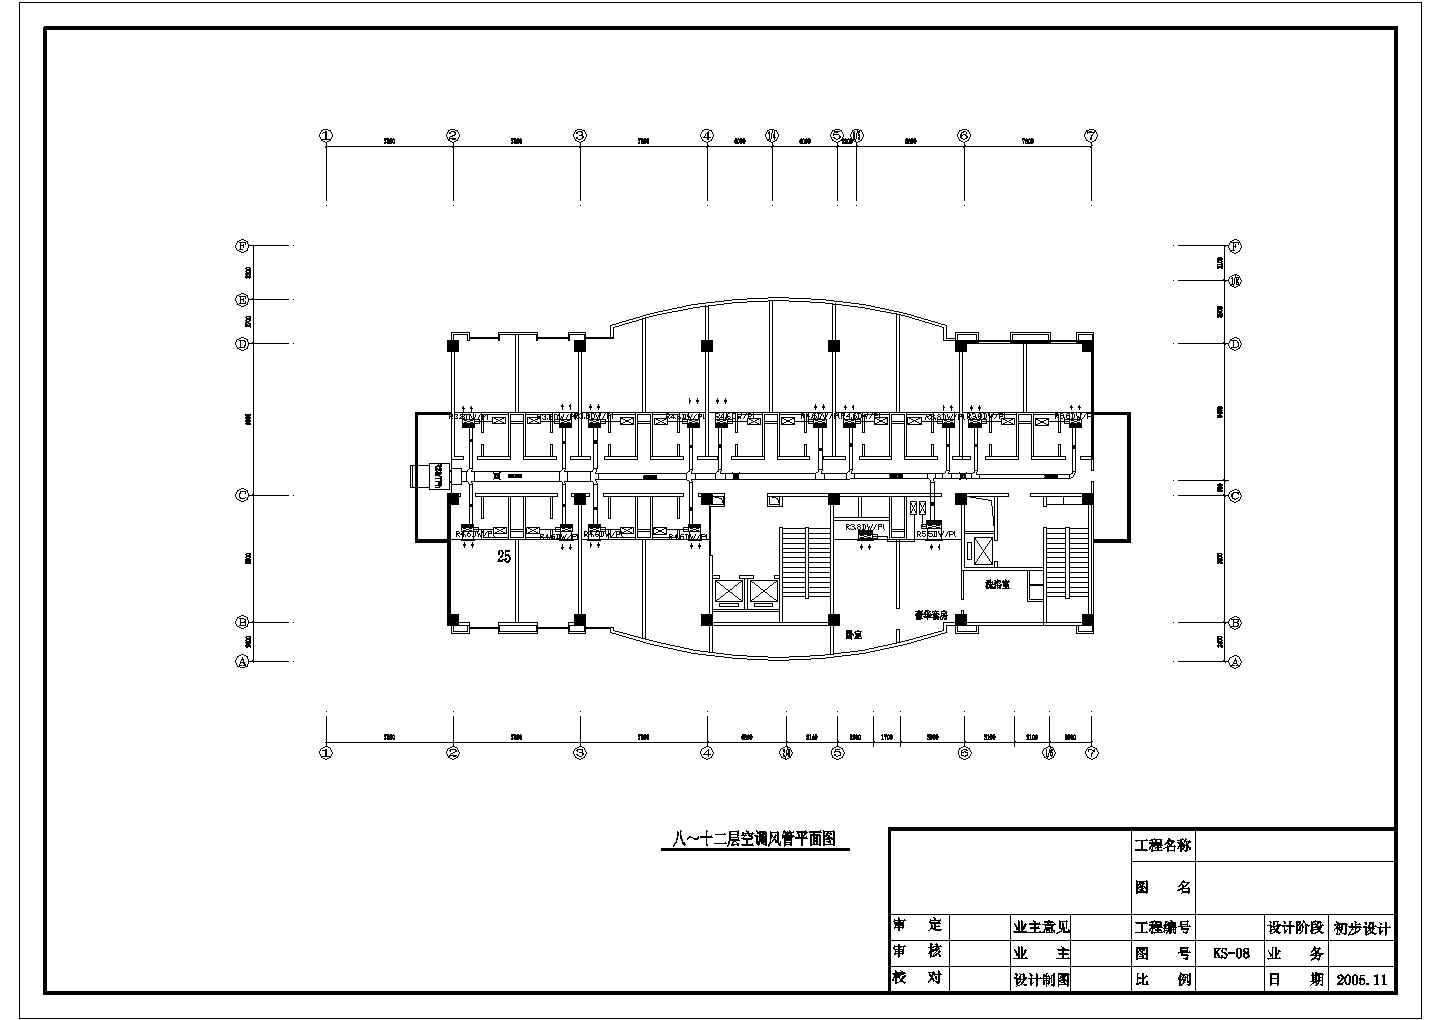 17层星级国际大酒店空调系统施工图